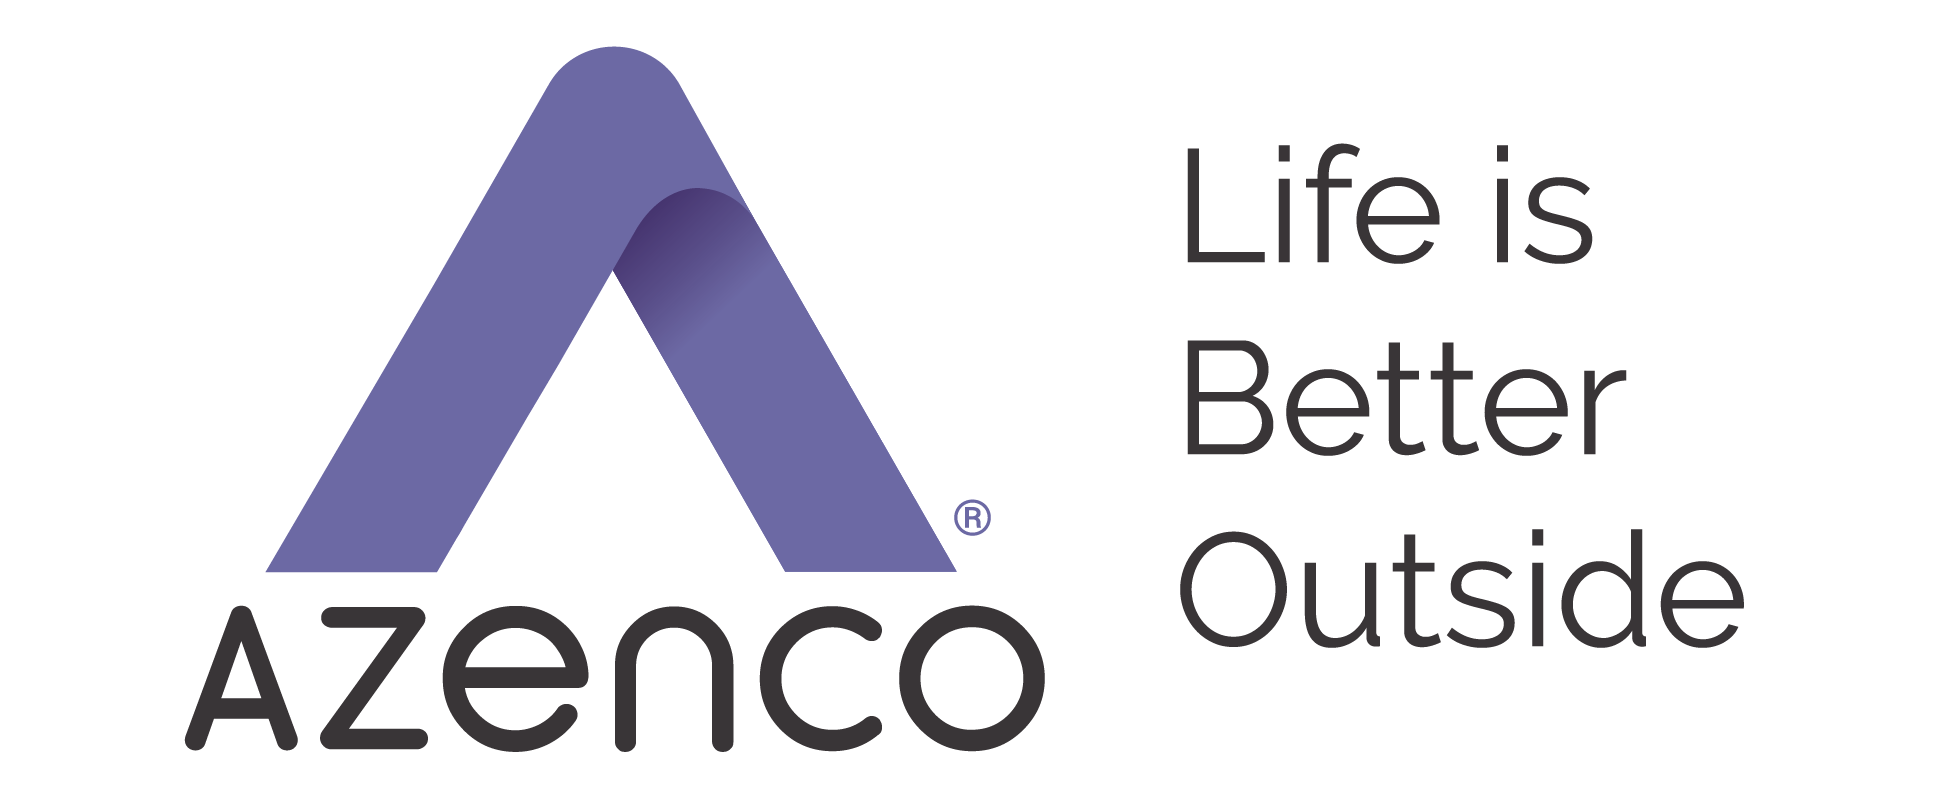 Azenco logo life is better outside